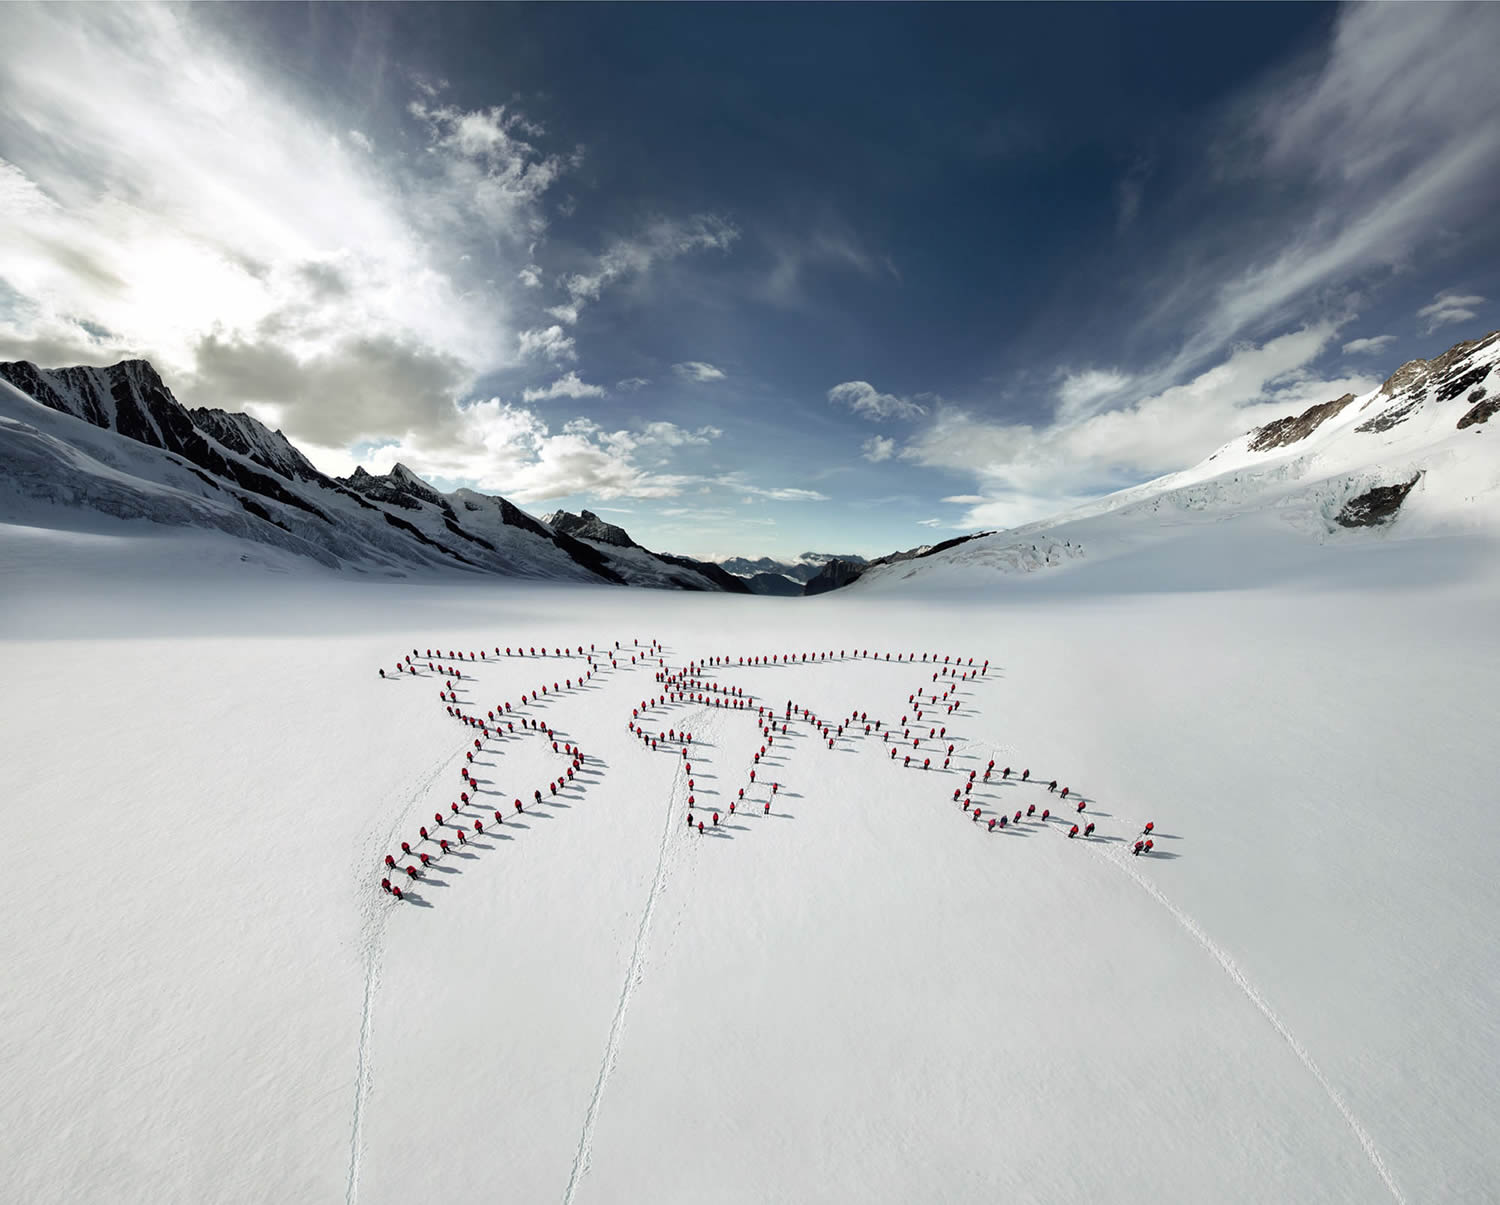 the world made of people on snow, Robert Bösch mammut